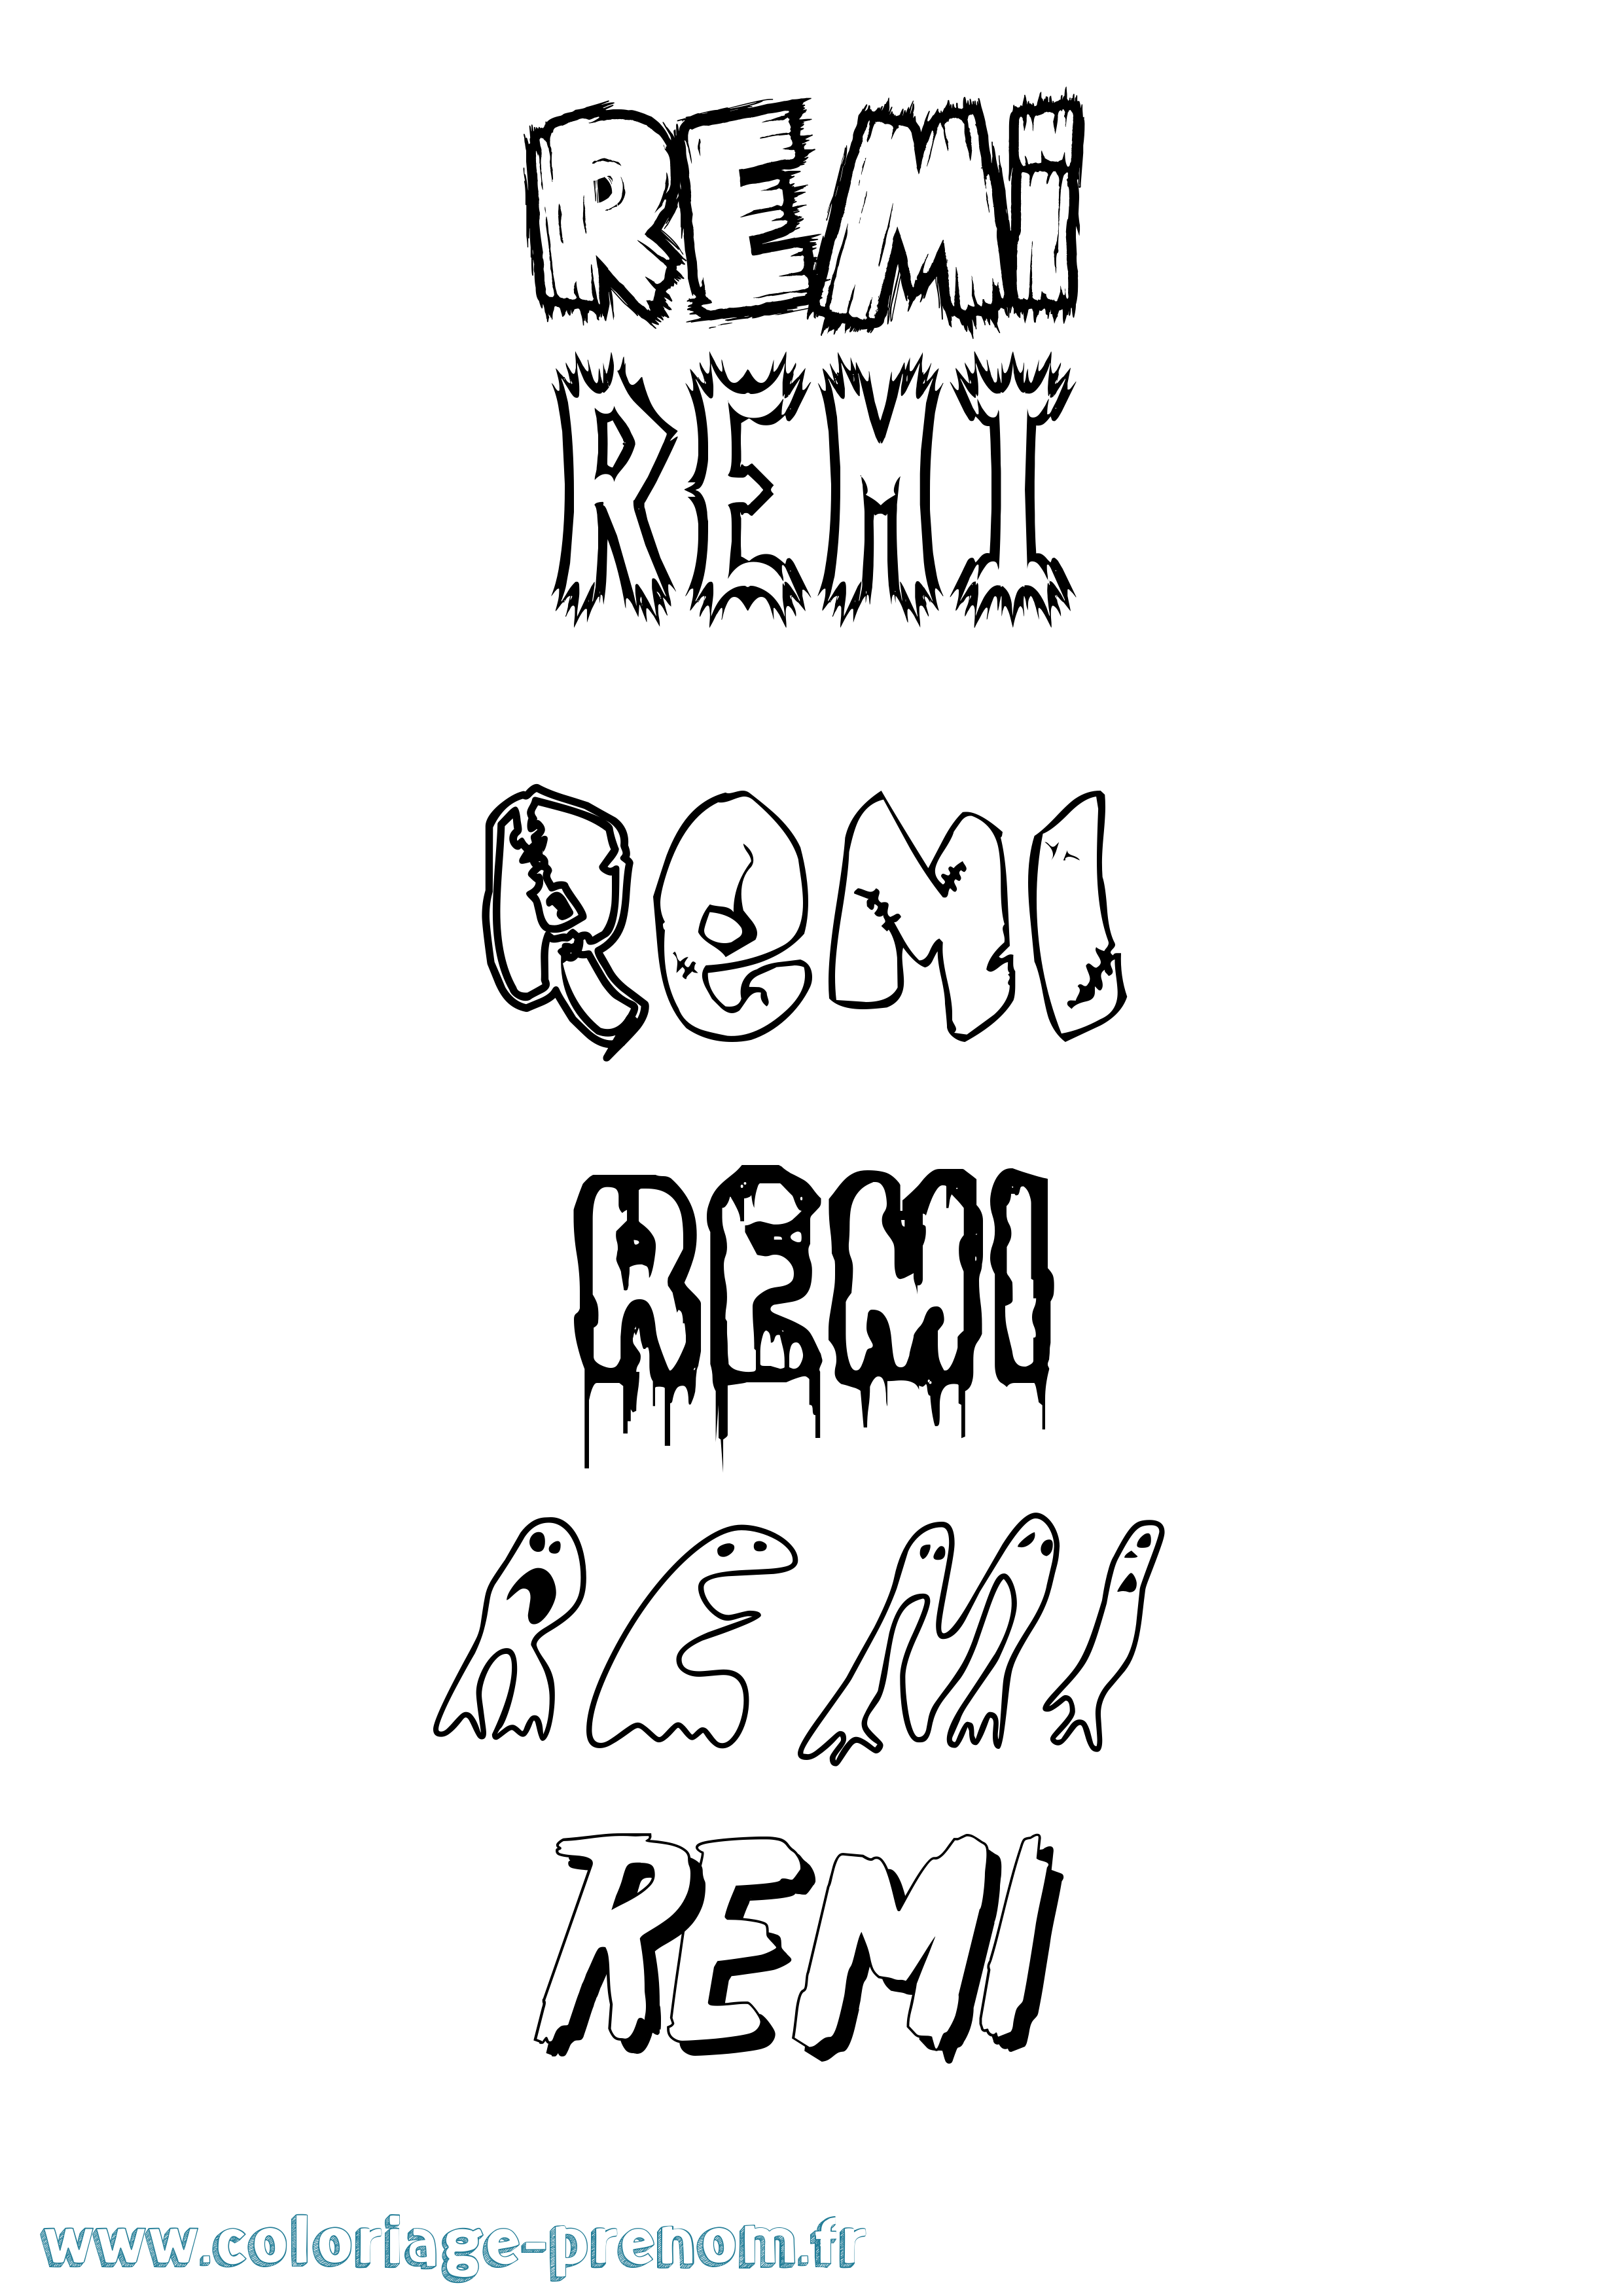 Coloriage prénom Remi